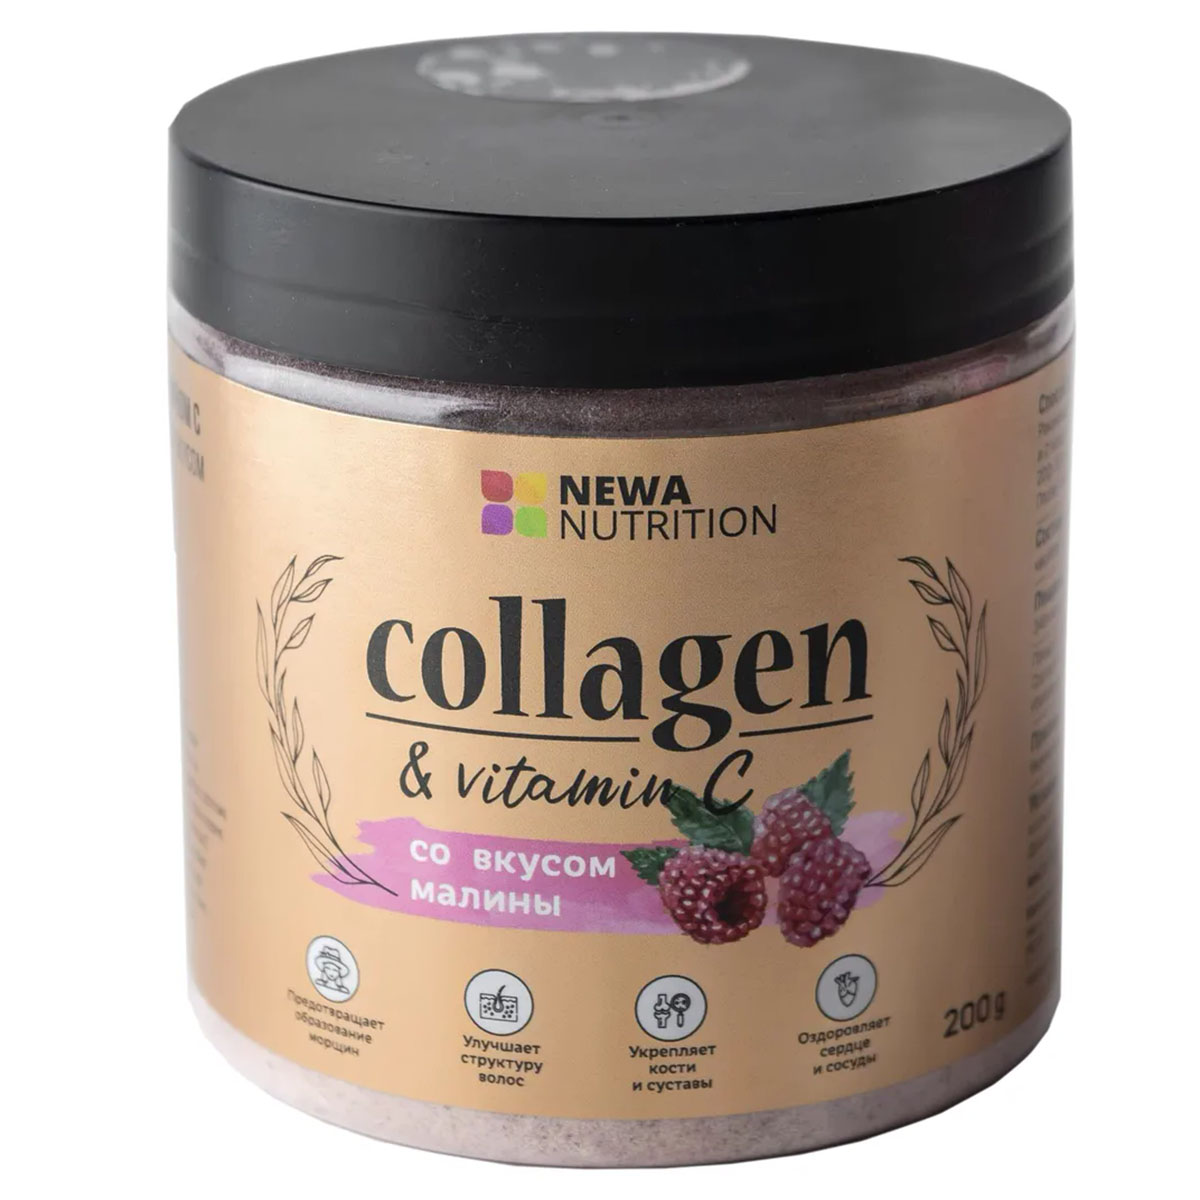 Для кожи, волос и ногтей  Фитомаркет Коллаген гидролизованный с витамином С, с малиновым вкусом, 200 г, Newa Nutrition